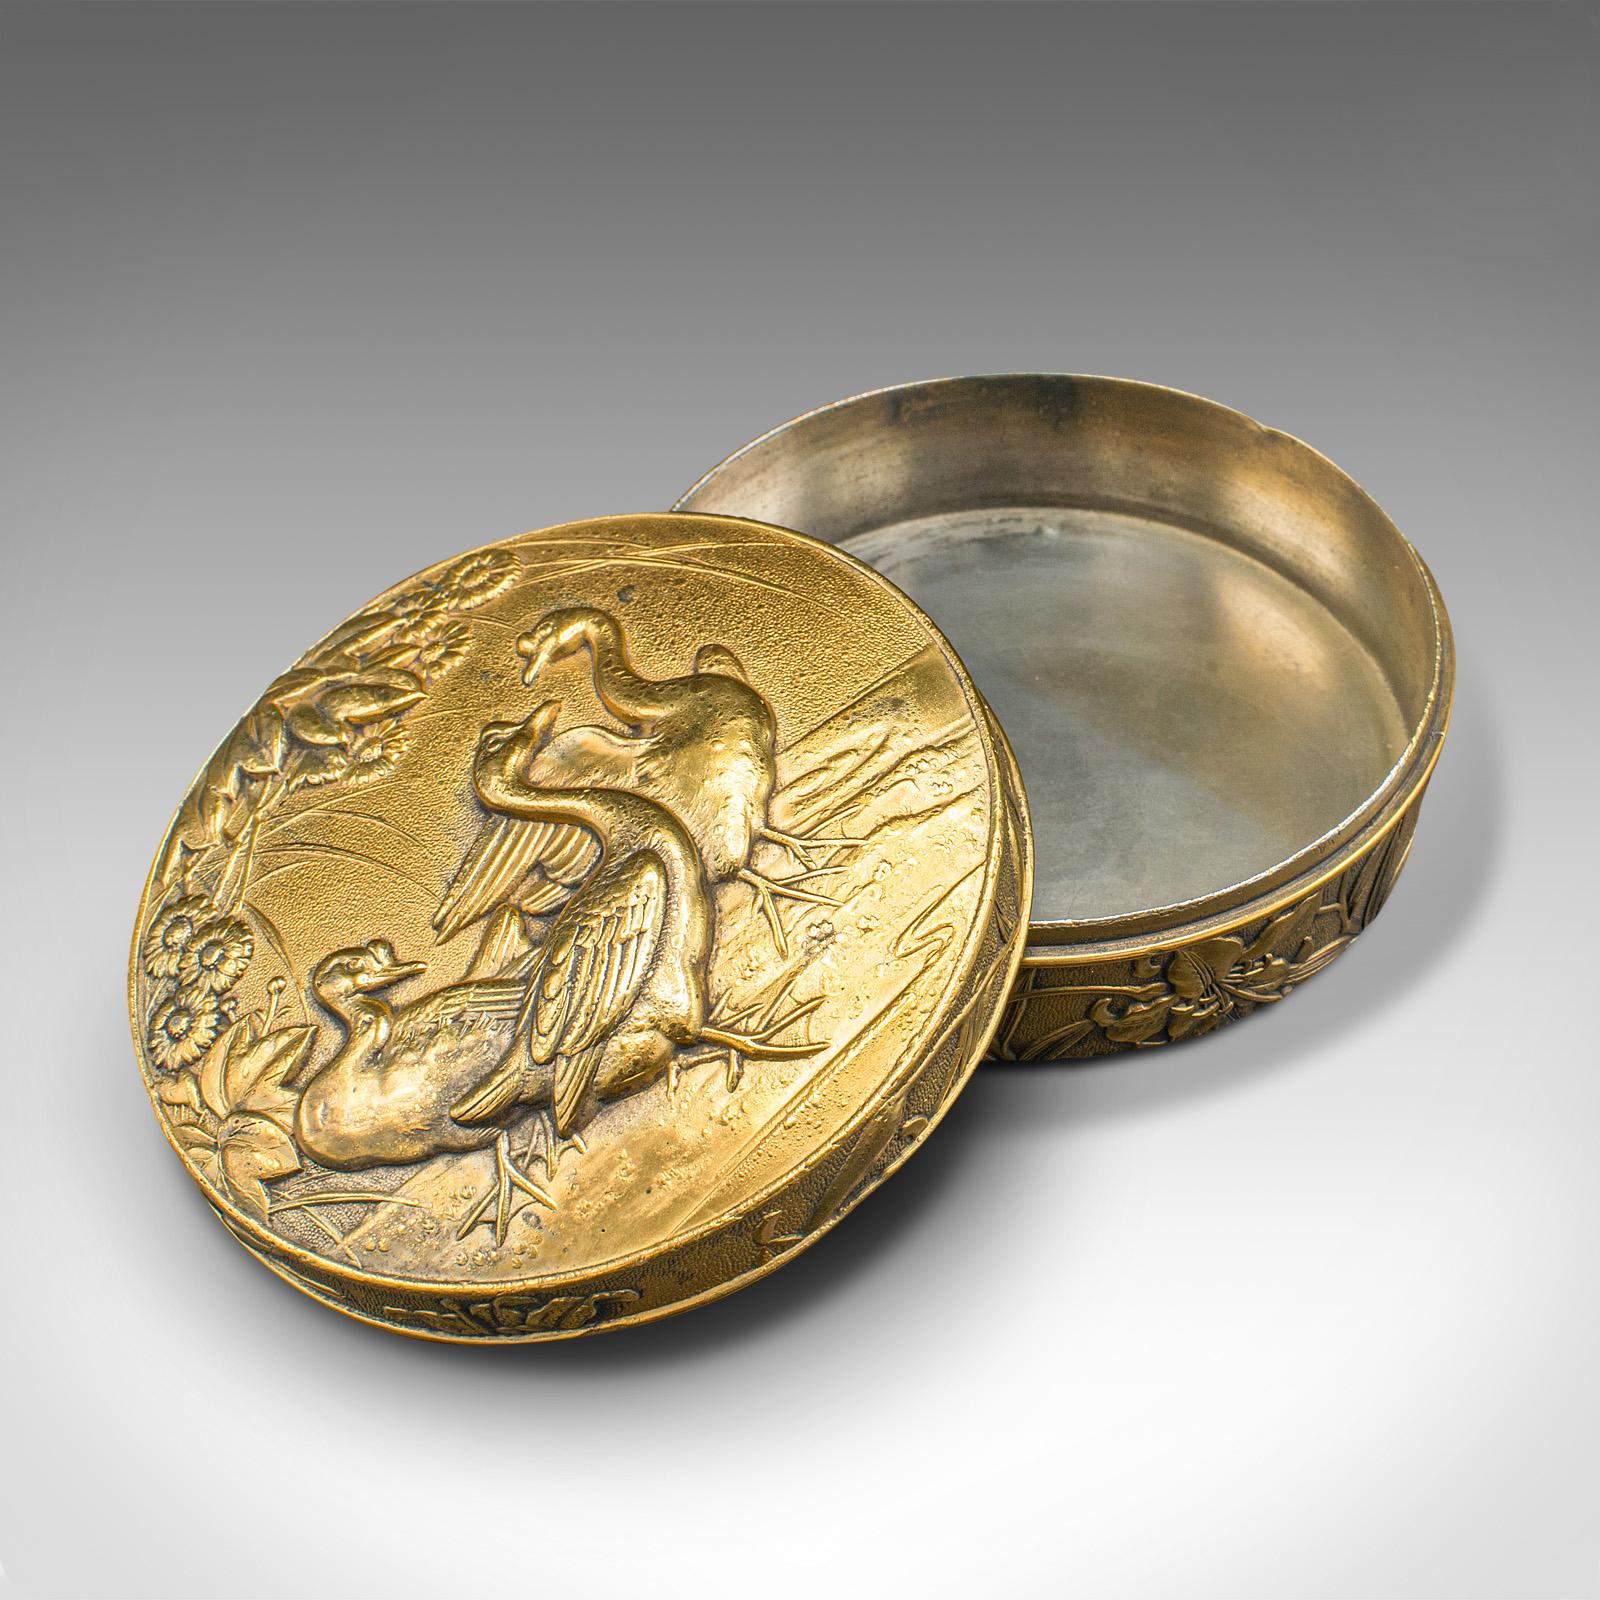 Il s'agit d'une tabatière ancienne. Boîte anglaise à couvercle en métal doré avec décor en relief, datant de la période victorienne, vers 1880.

Fascinante boîte de conserve décorative avec de superbes couleurs
Présentant une patine d'ancienneté